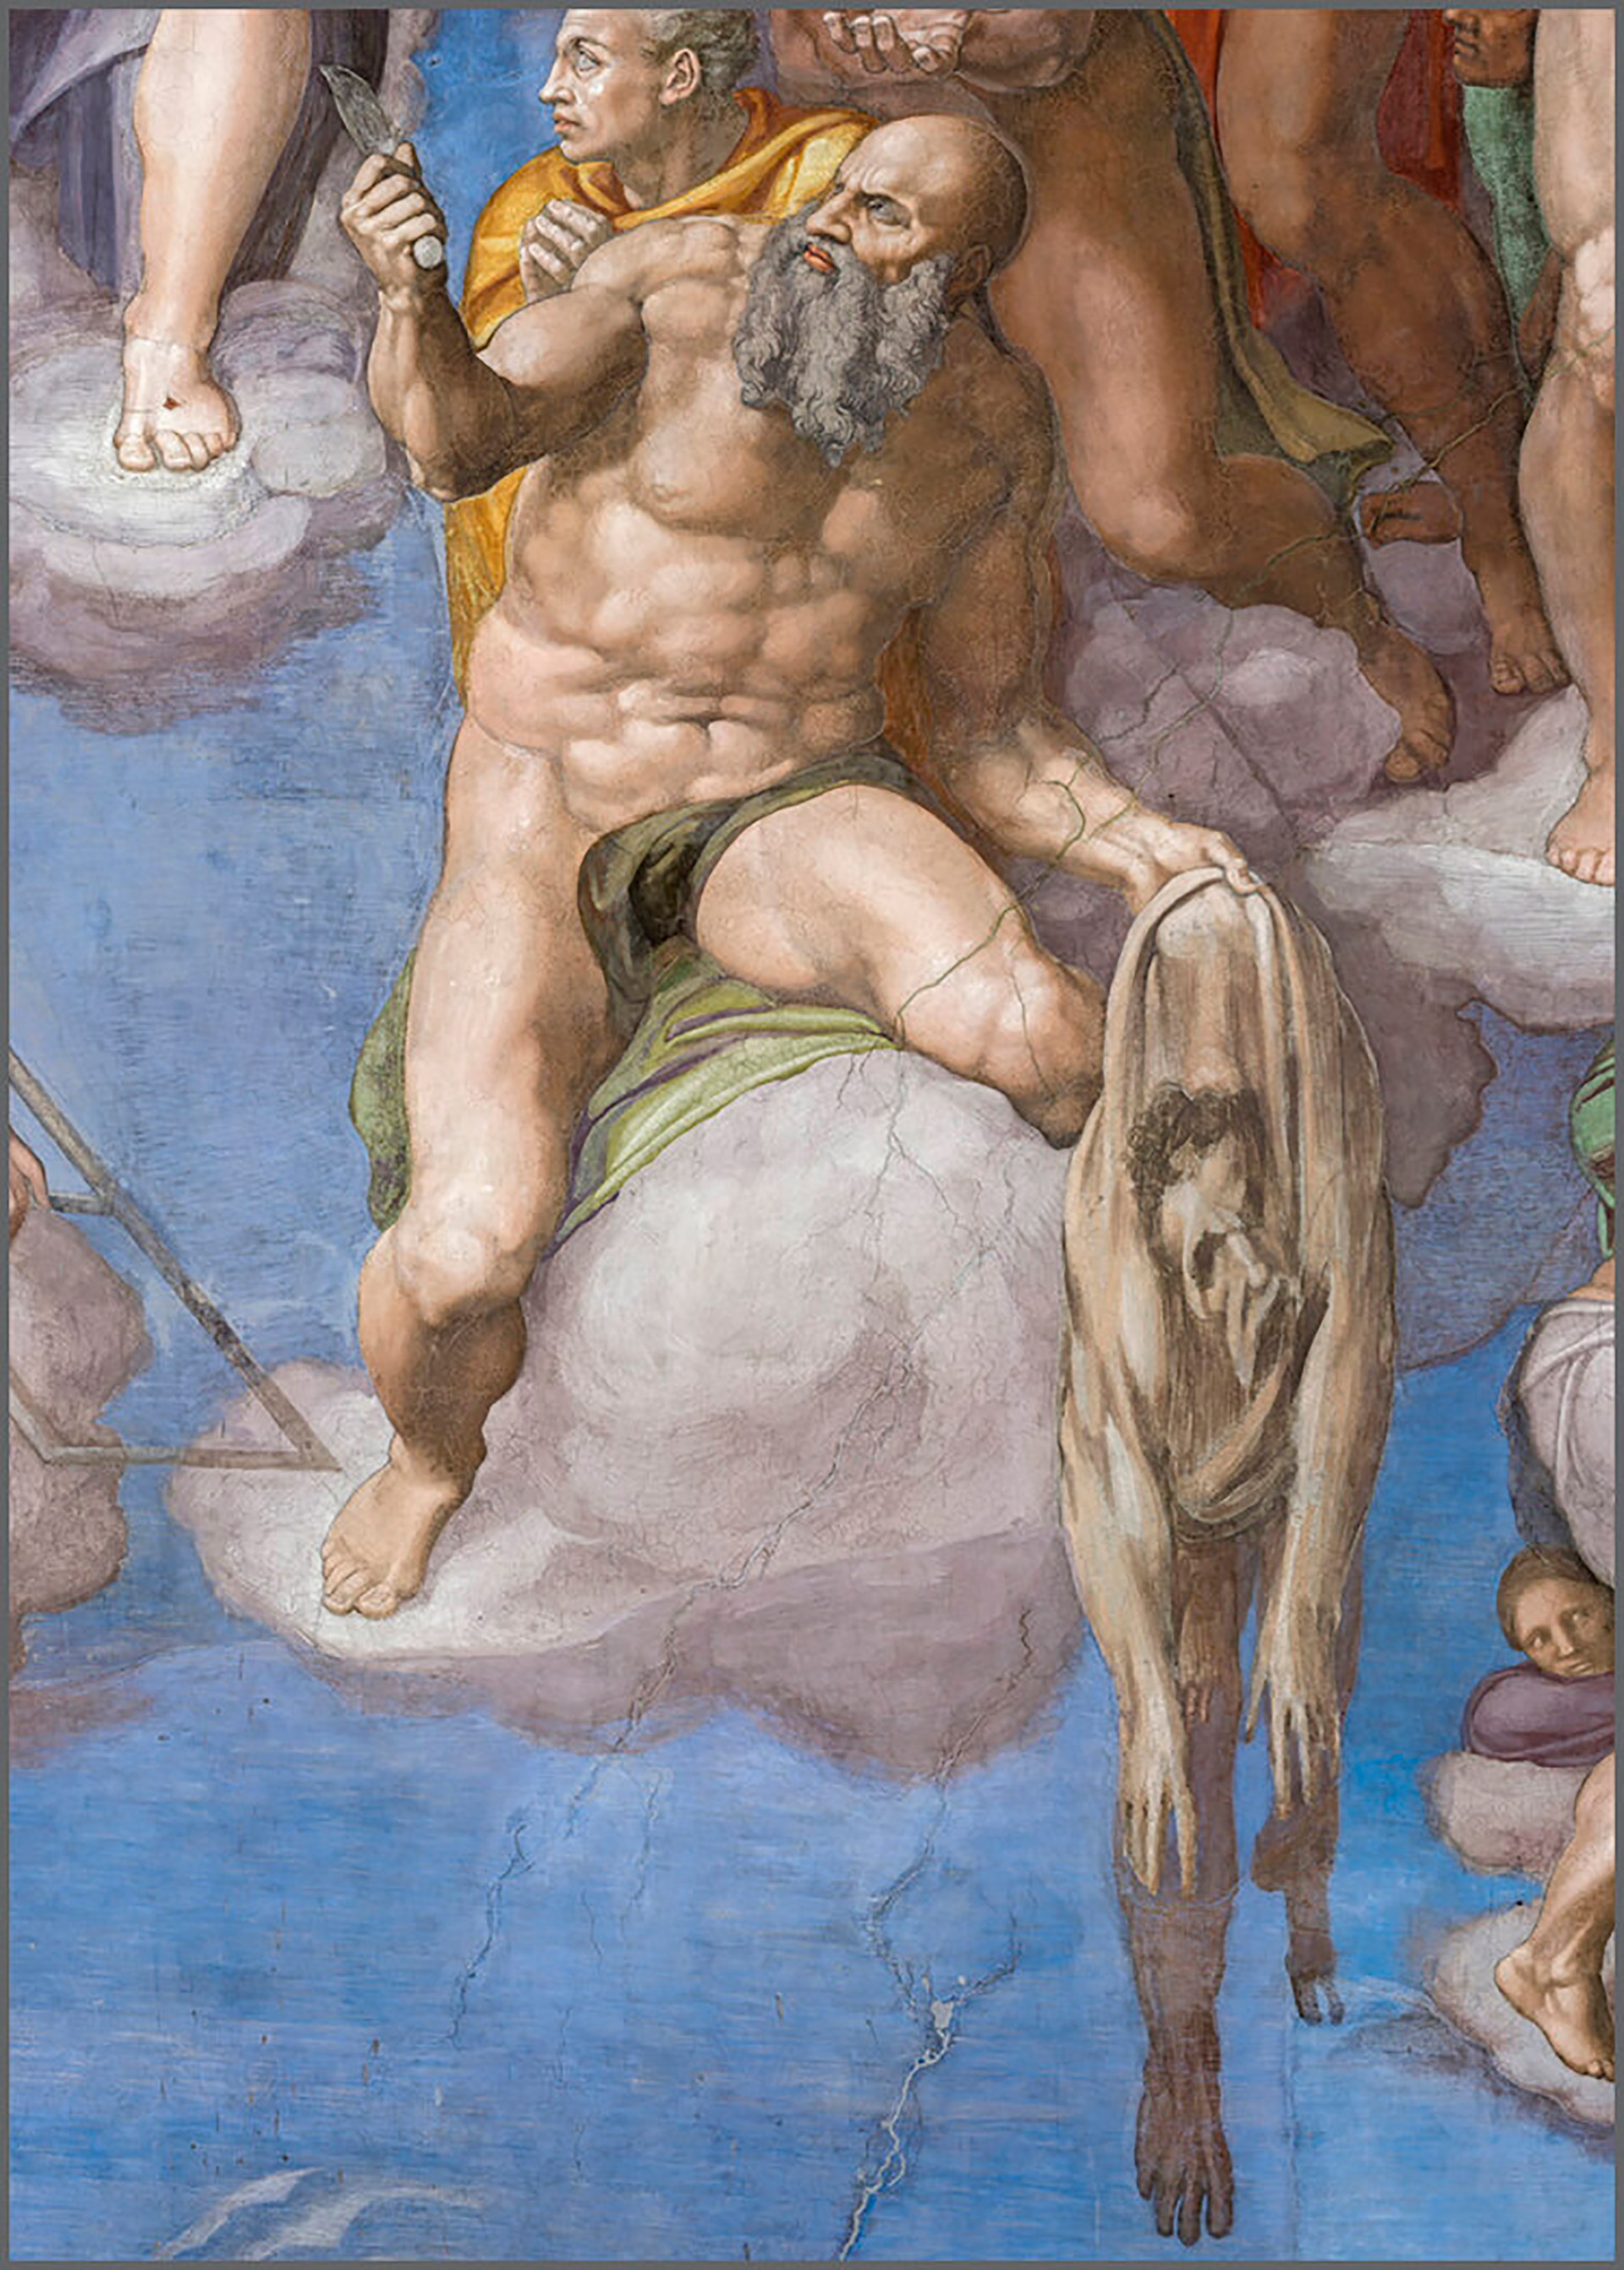 Una de las imágenes del libro "Sistine Chapel" reproducidas gracias a un ambicioso proyecto fotográfico (Museos Vaticanos)